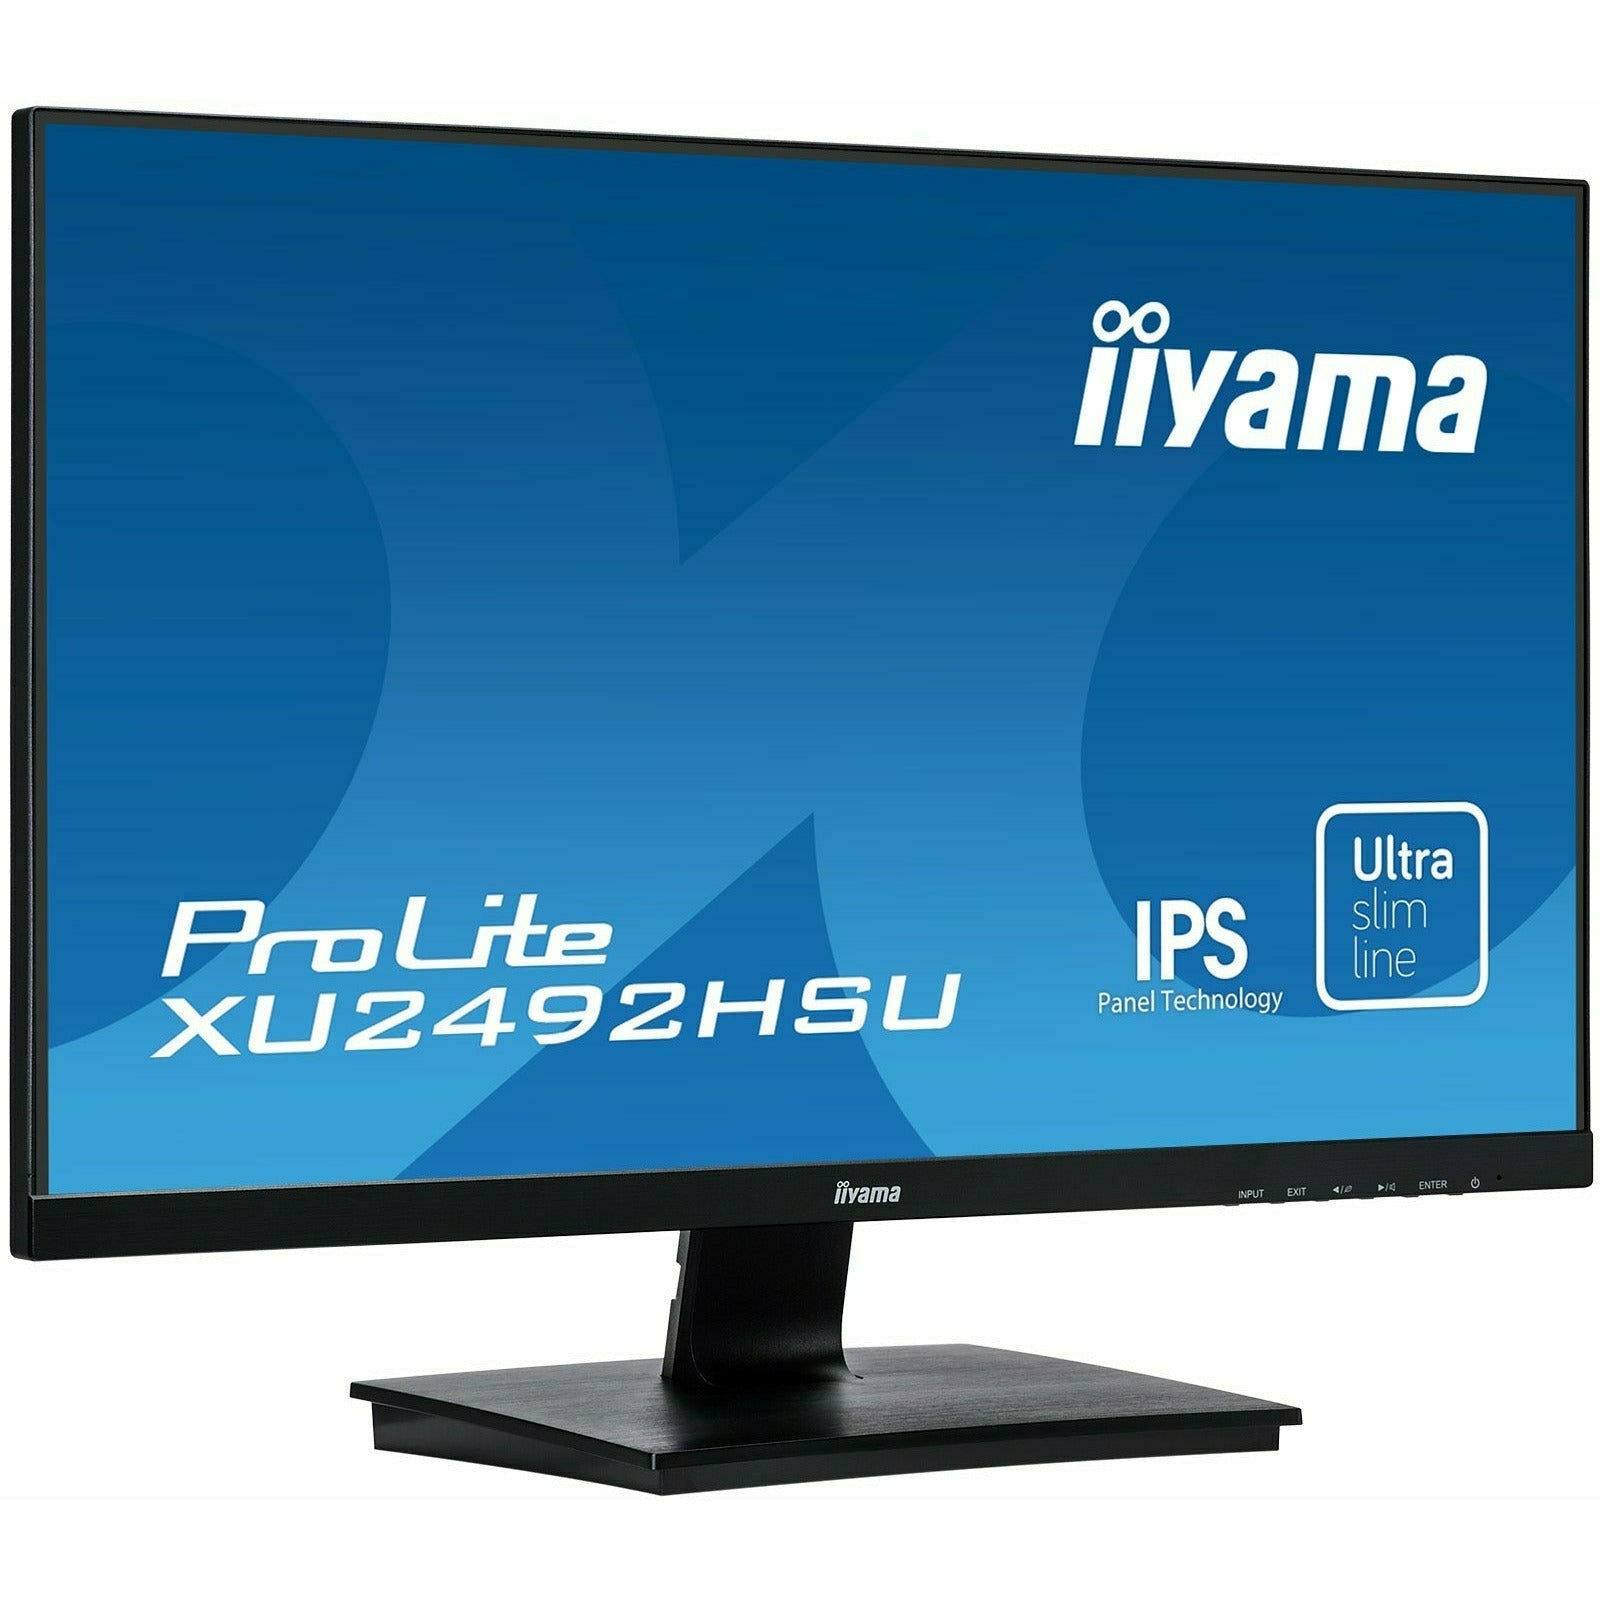 iiyama XU2492HSU-B1 24" IPS LCD Slim Bezel Monitor